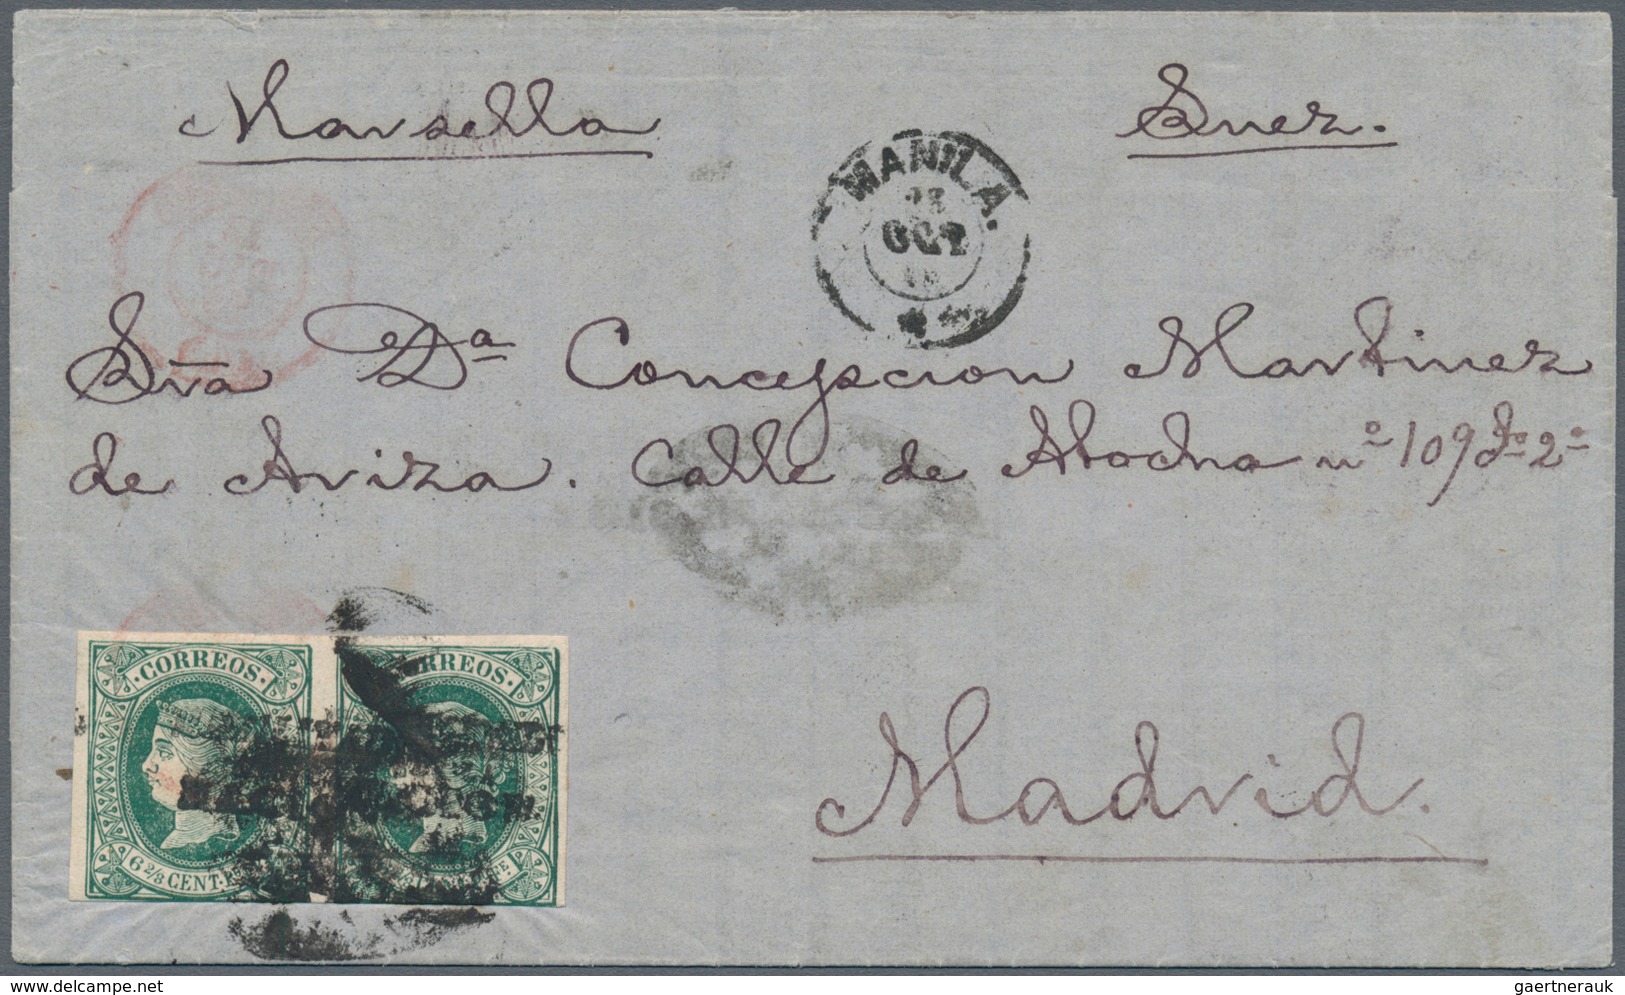 Philippinen: 1870, 6 2/8 Green Ctvos, A Horizontal Par Ovpt. "habilitado Por La Nacion", Pmkd. Paril - Philippines